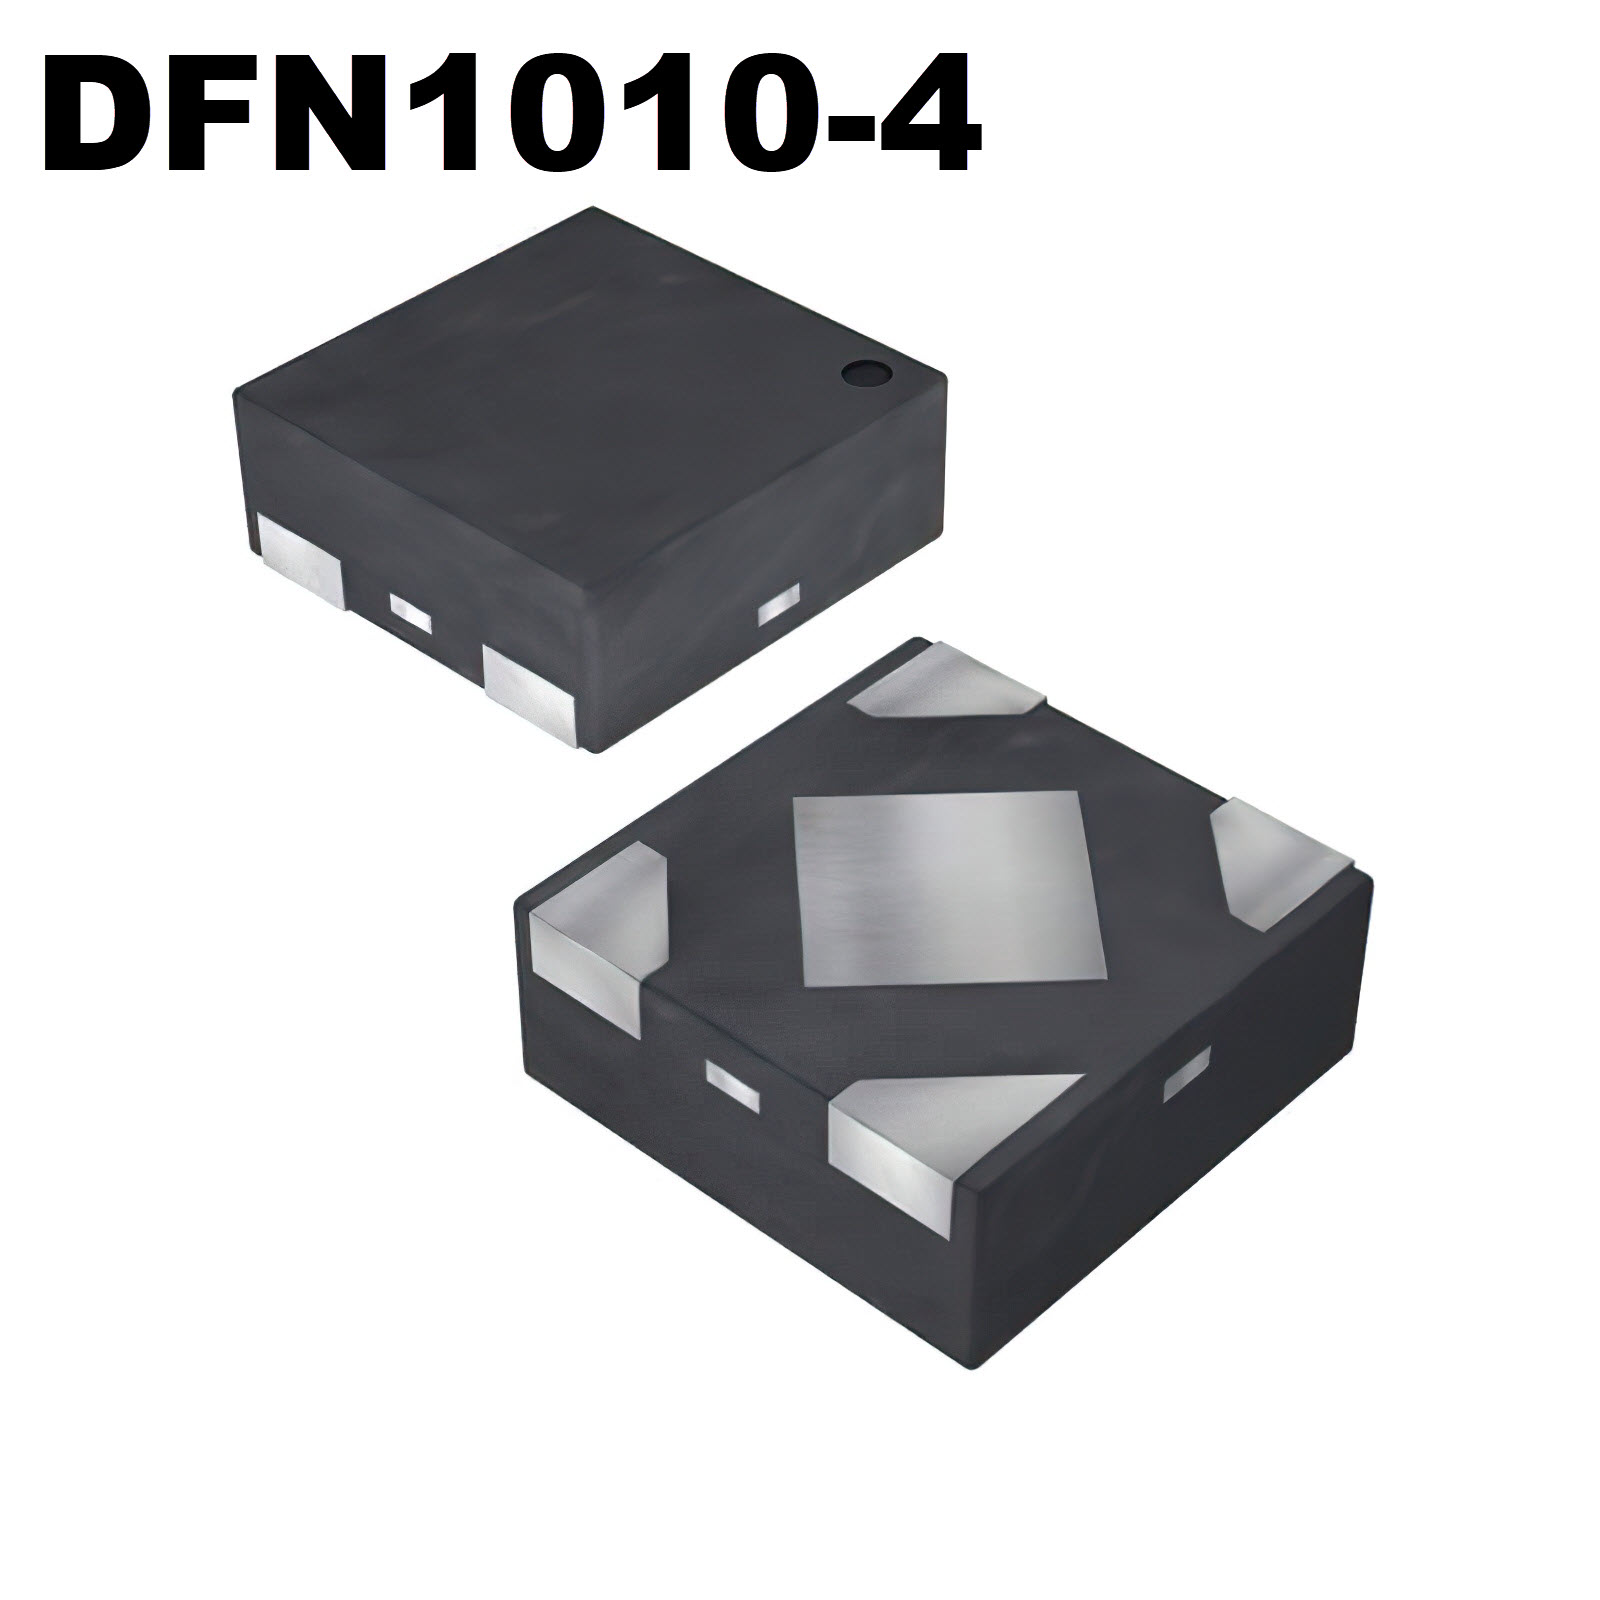 DFN1010-4